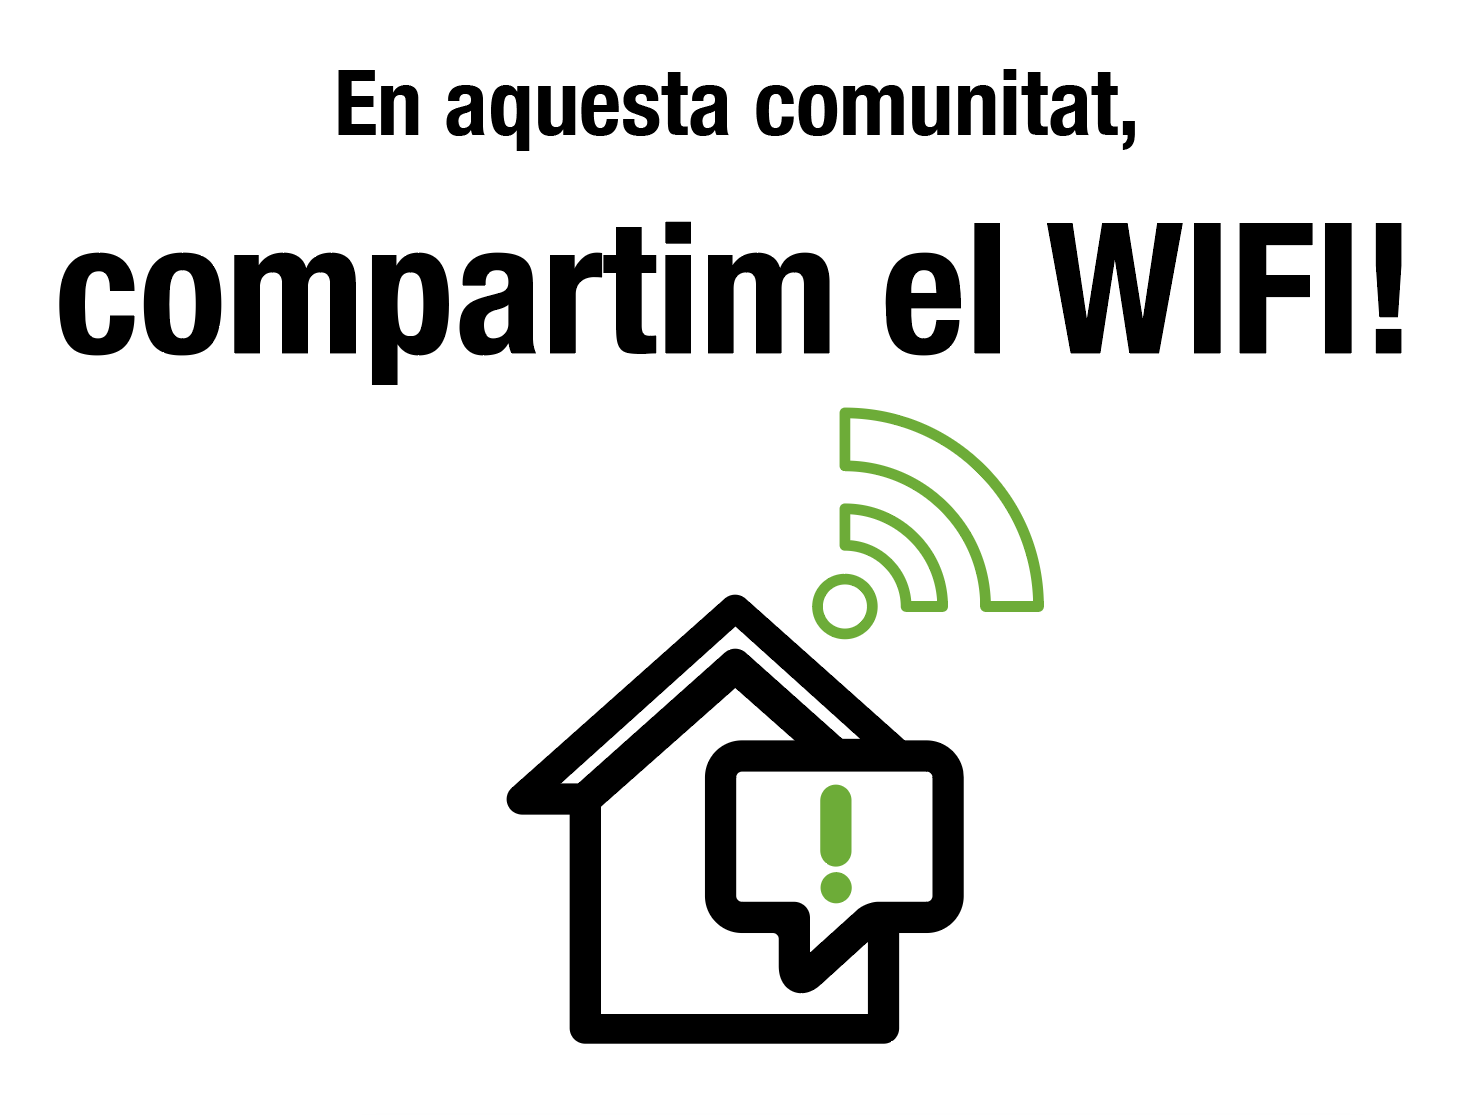 En aquesta comunitat, compartim el wifi!